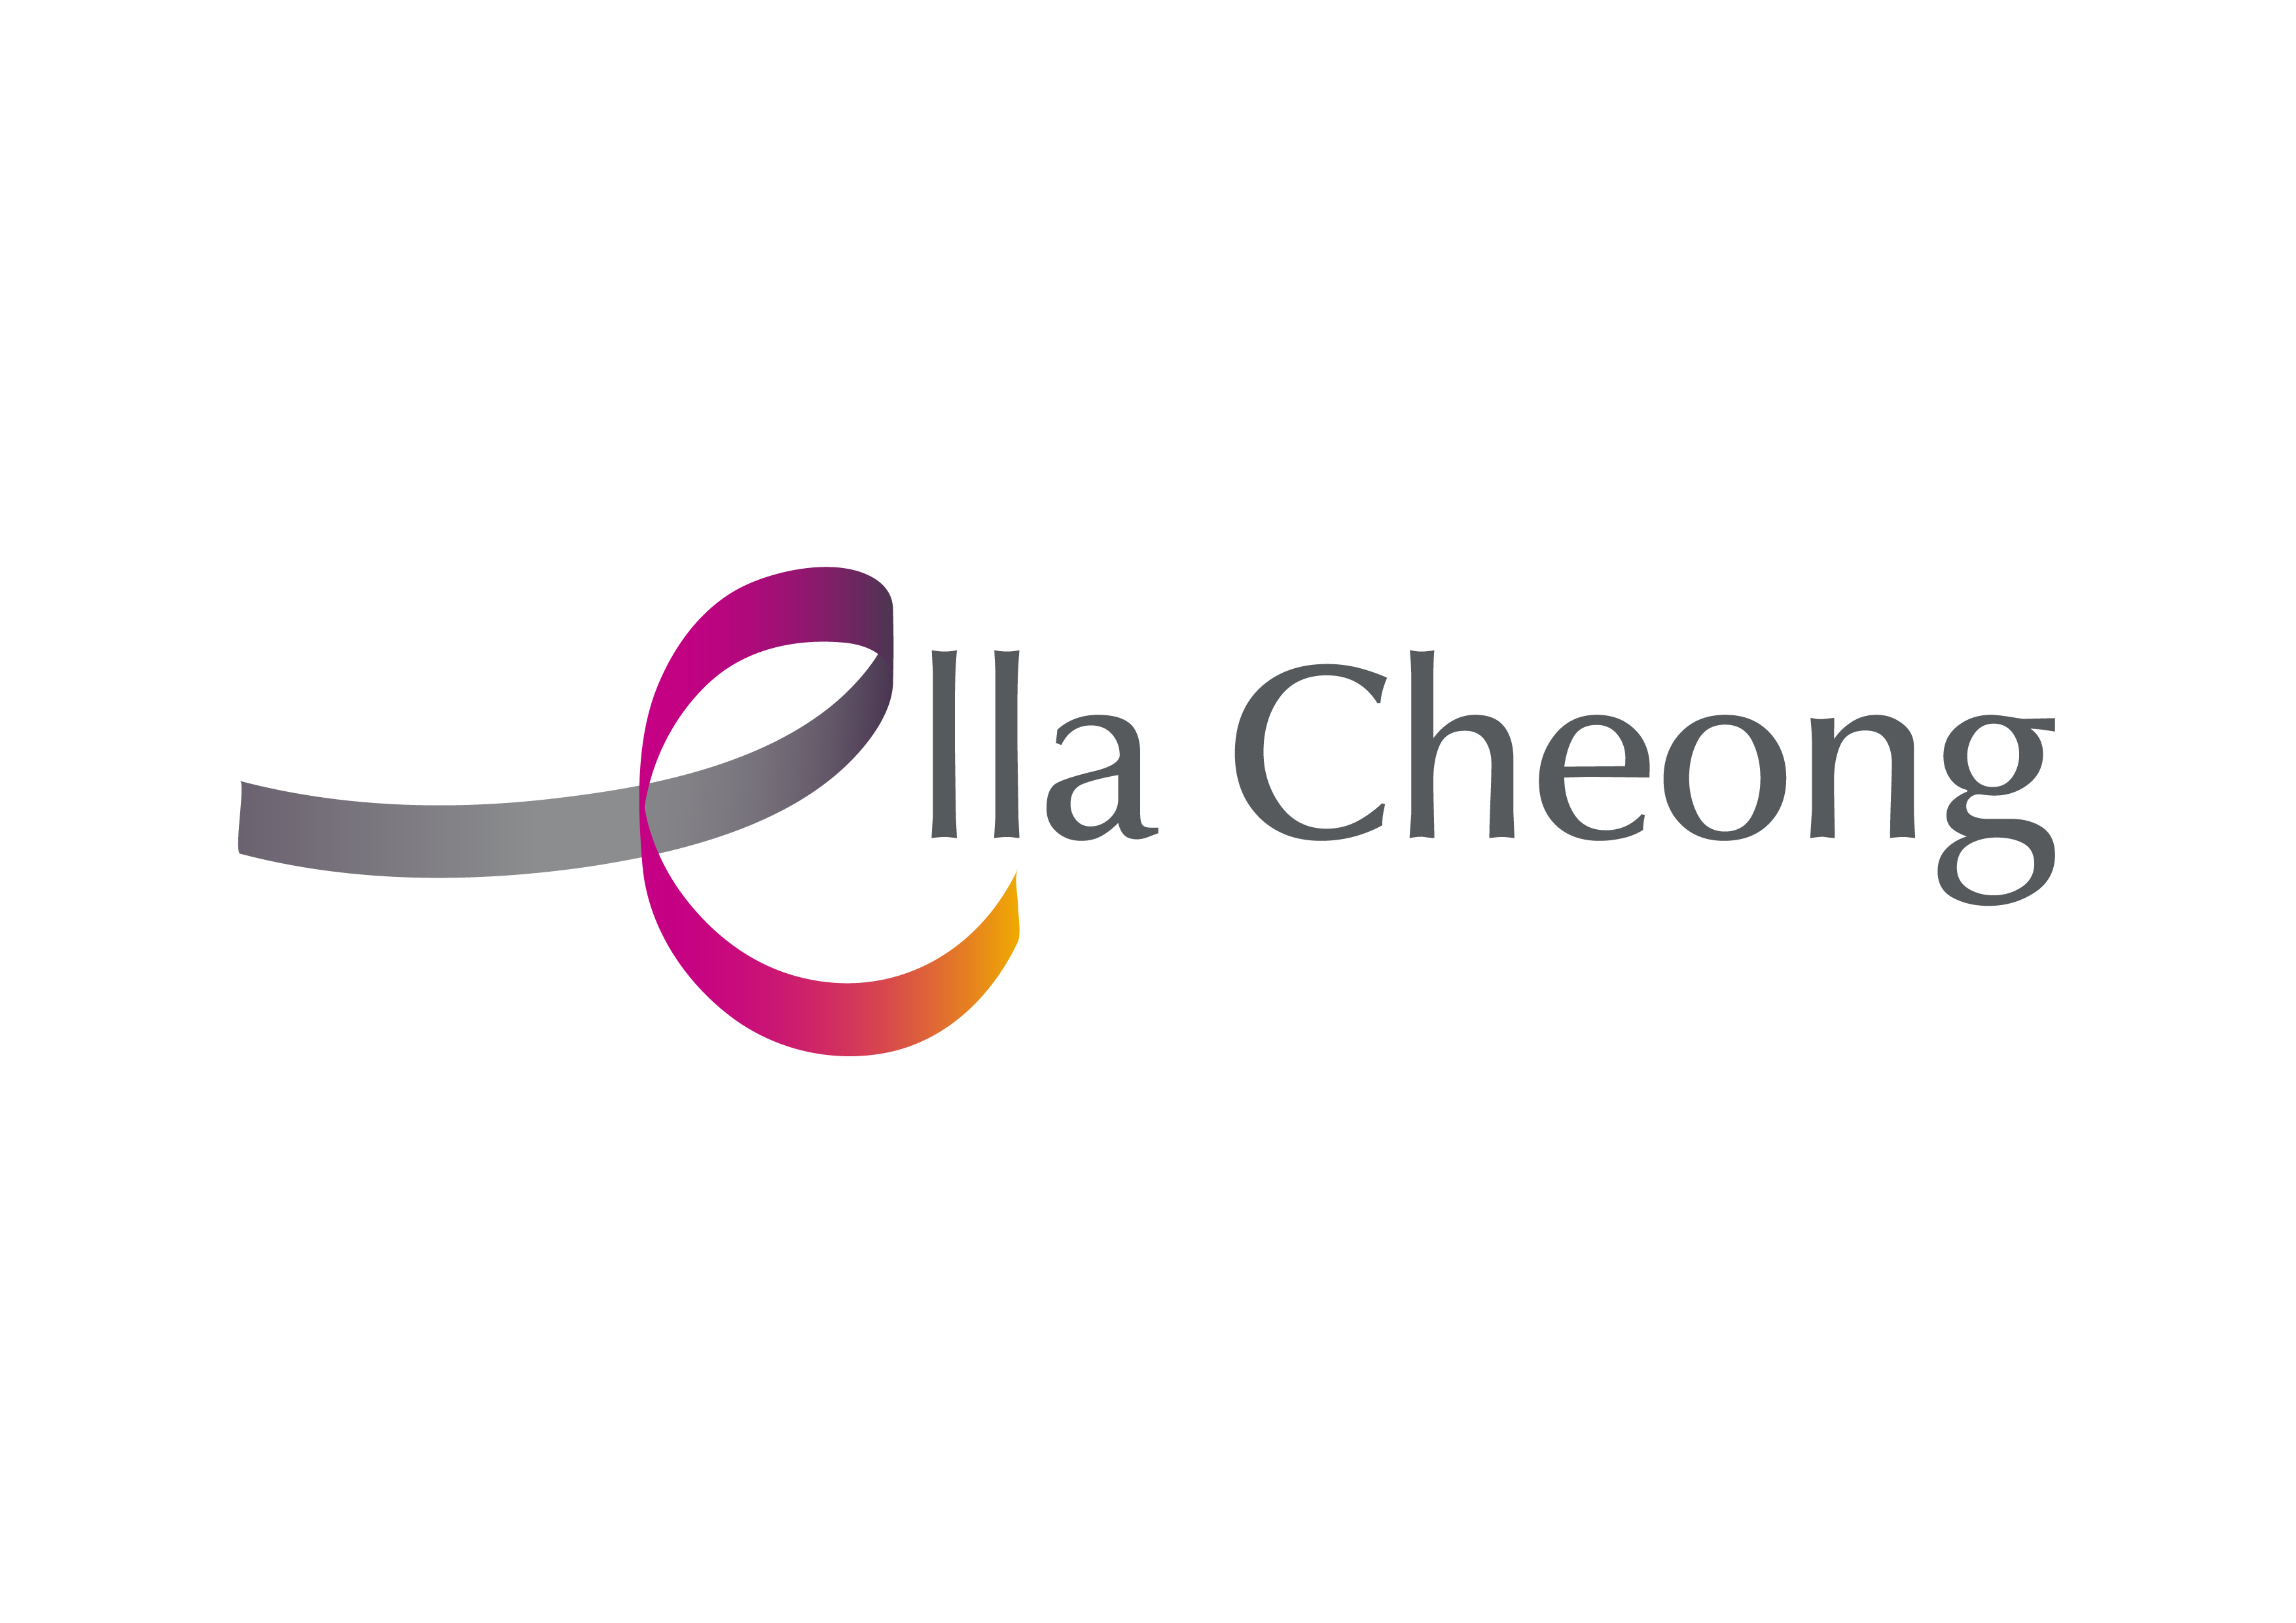 Ella Cheong Llc logo